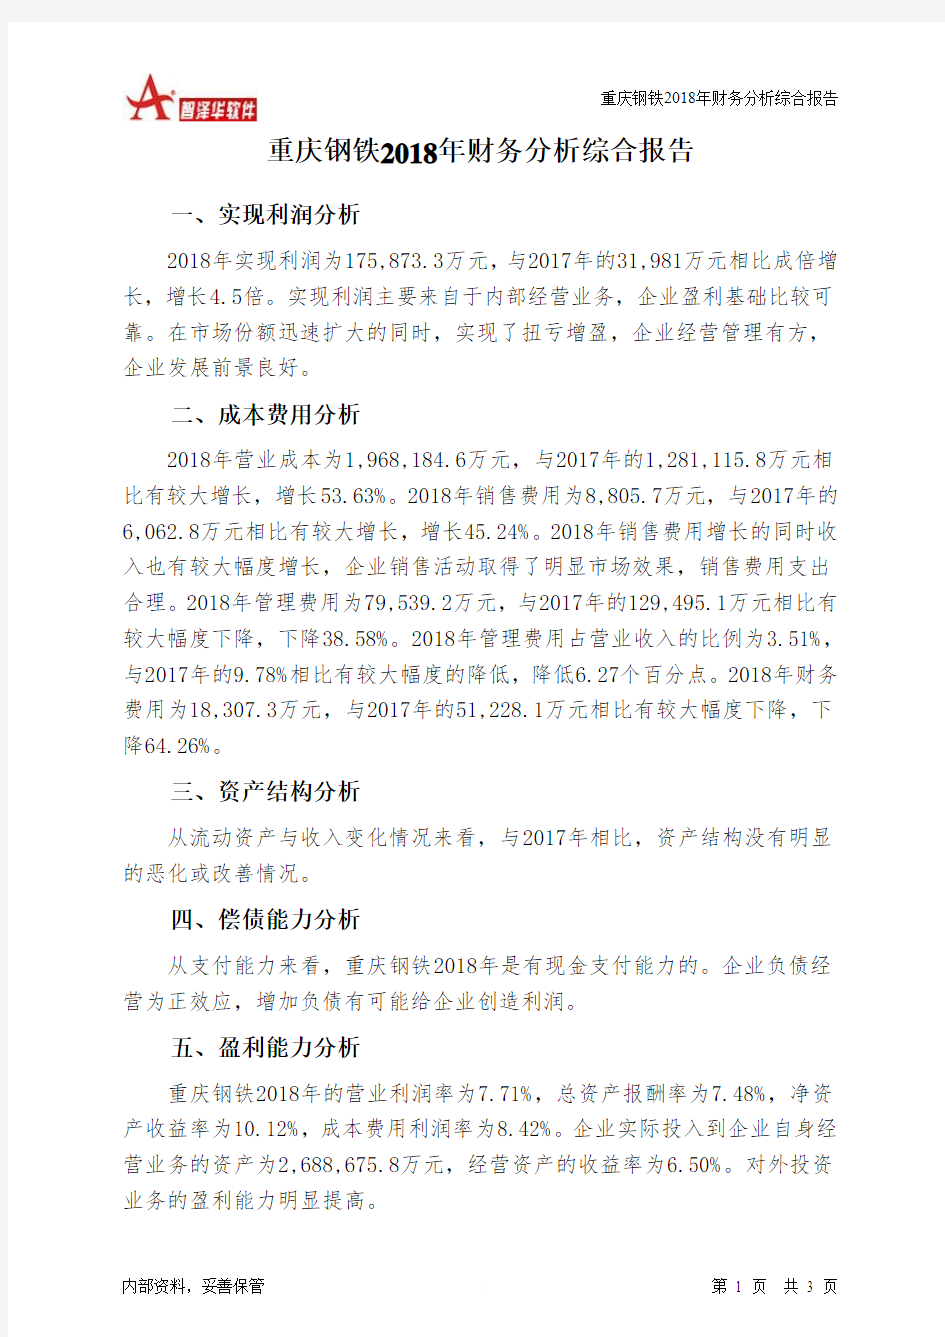 重庆钢铁2018年财务分析结论报告-智泽华